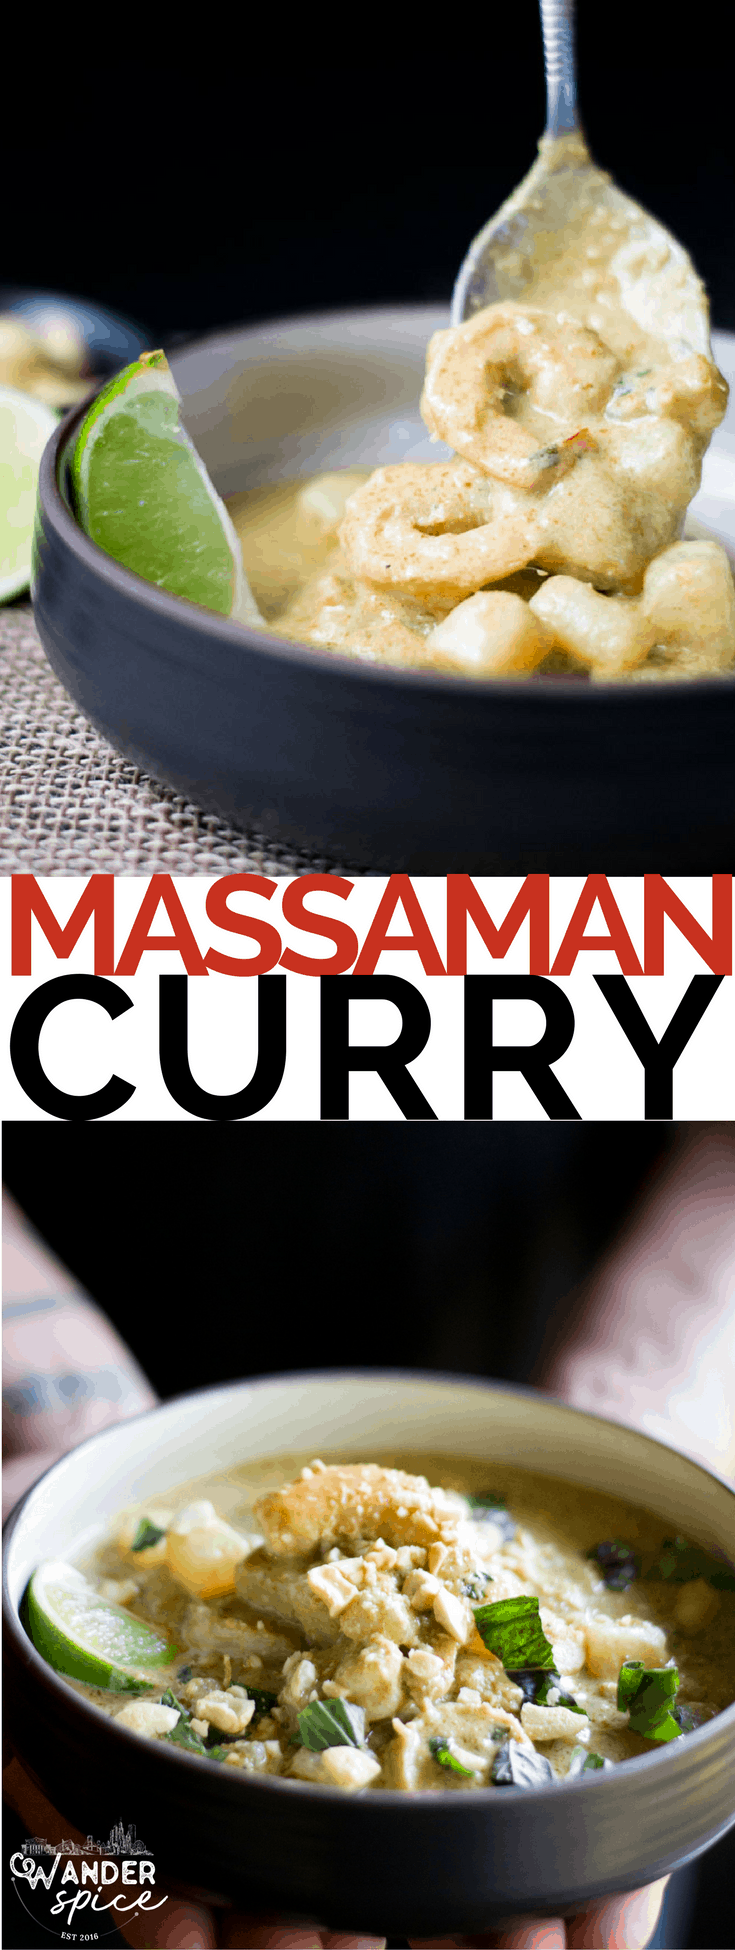 massaman curry pin